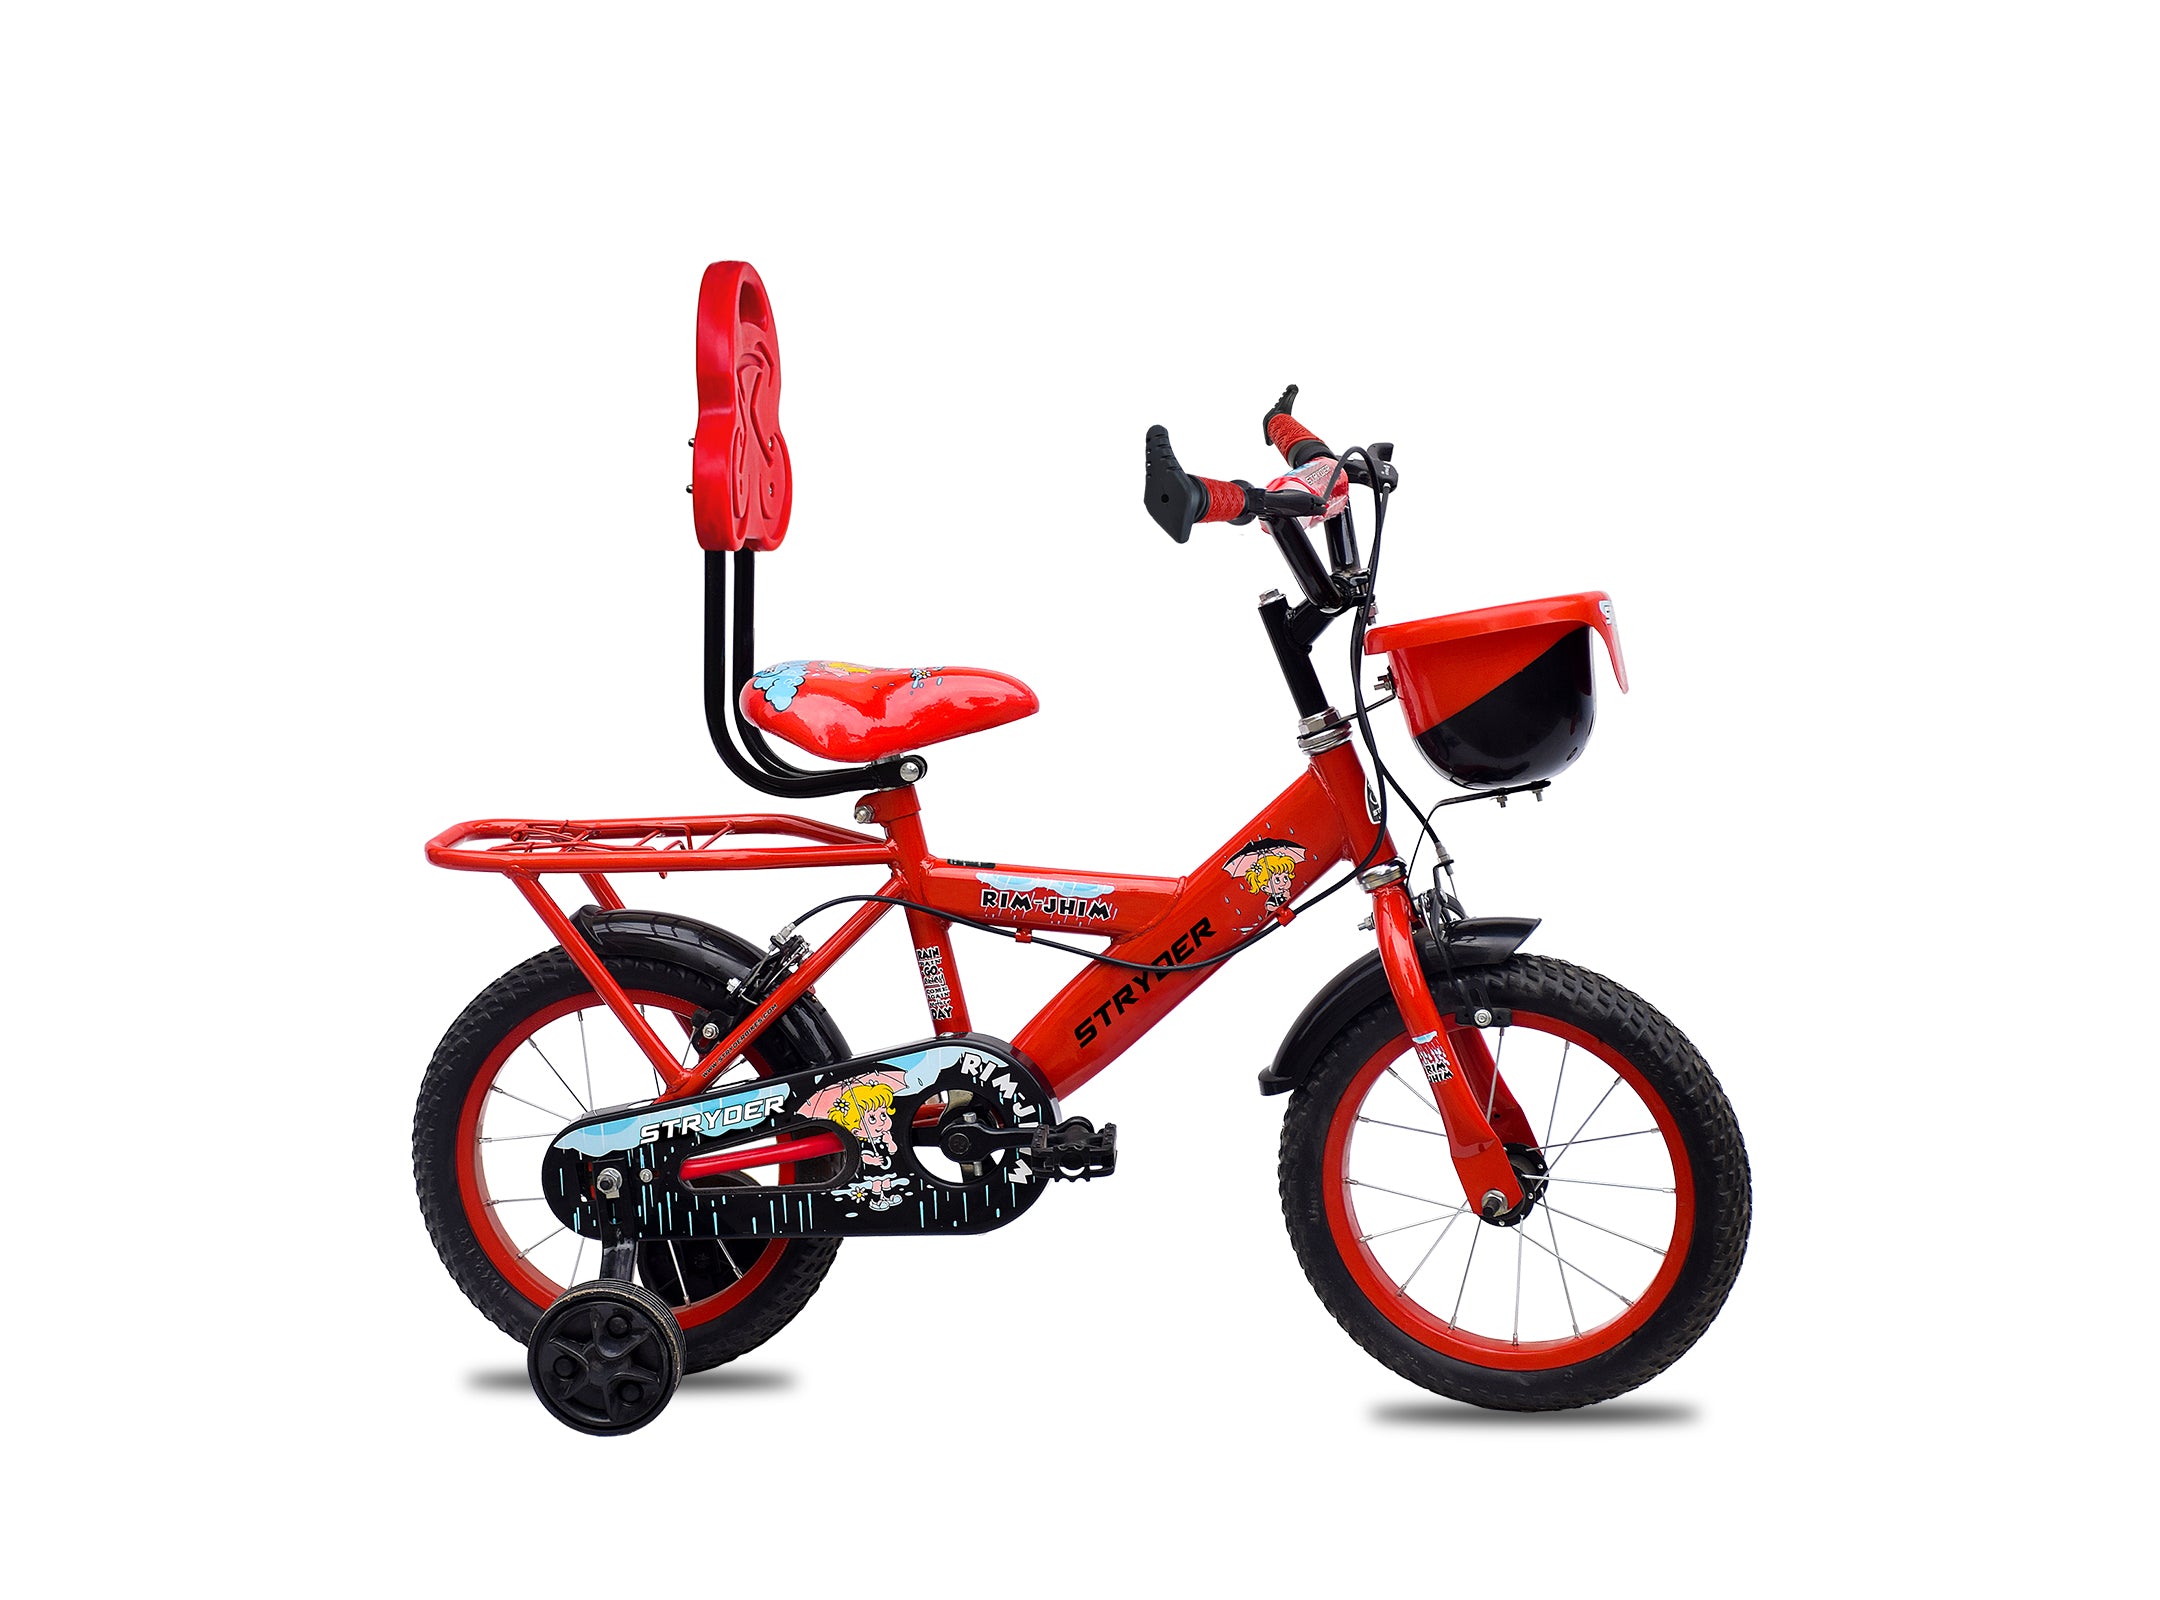 Boys Bicycle Buy Kids Bike Online at Best Price Stryder Bike